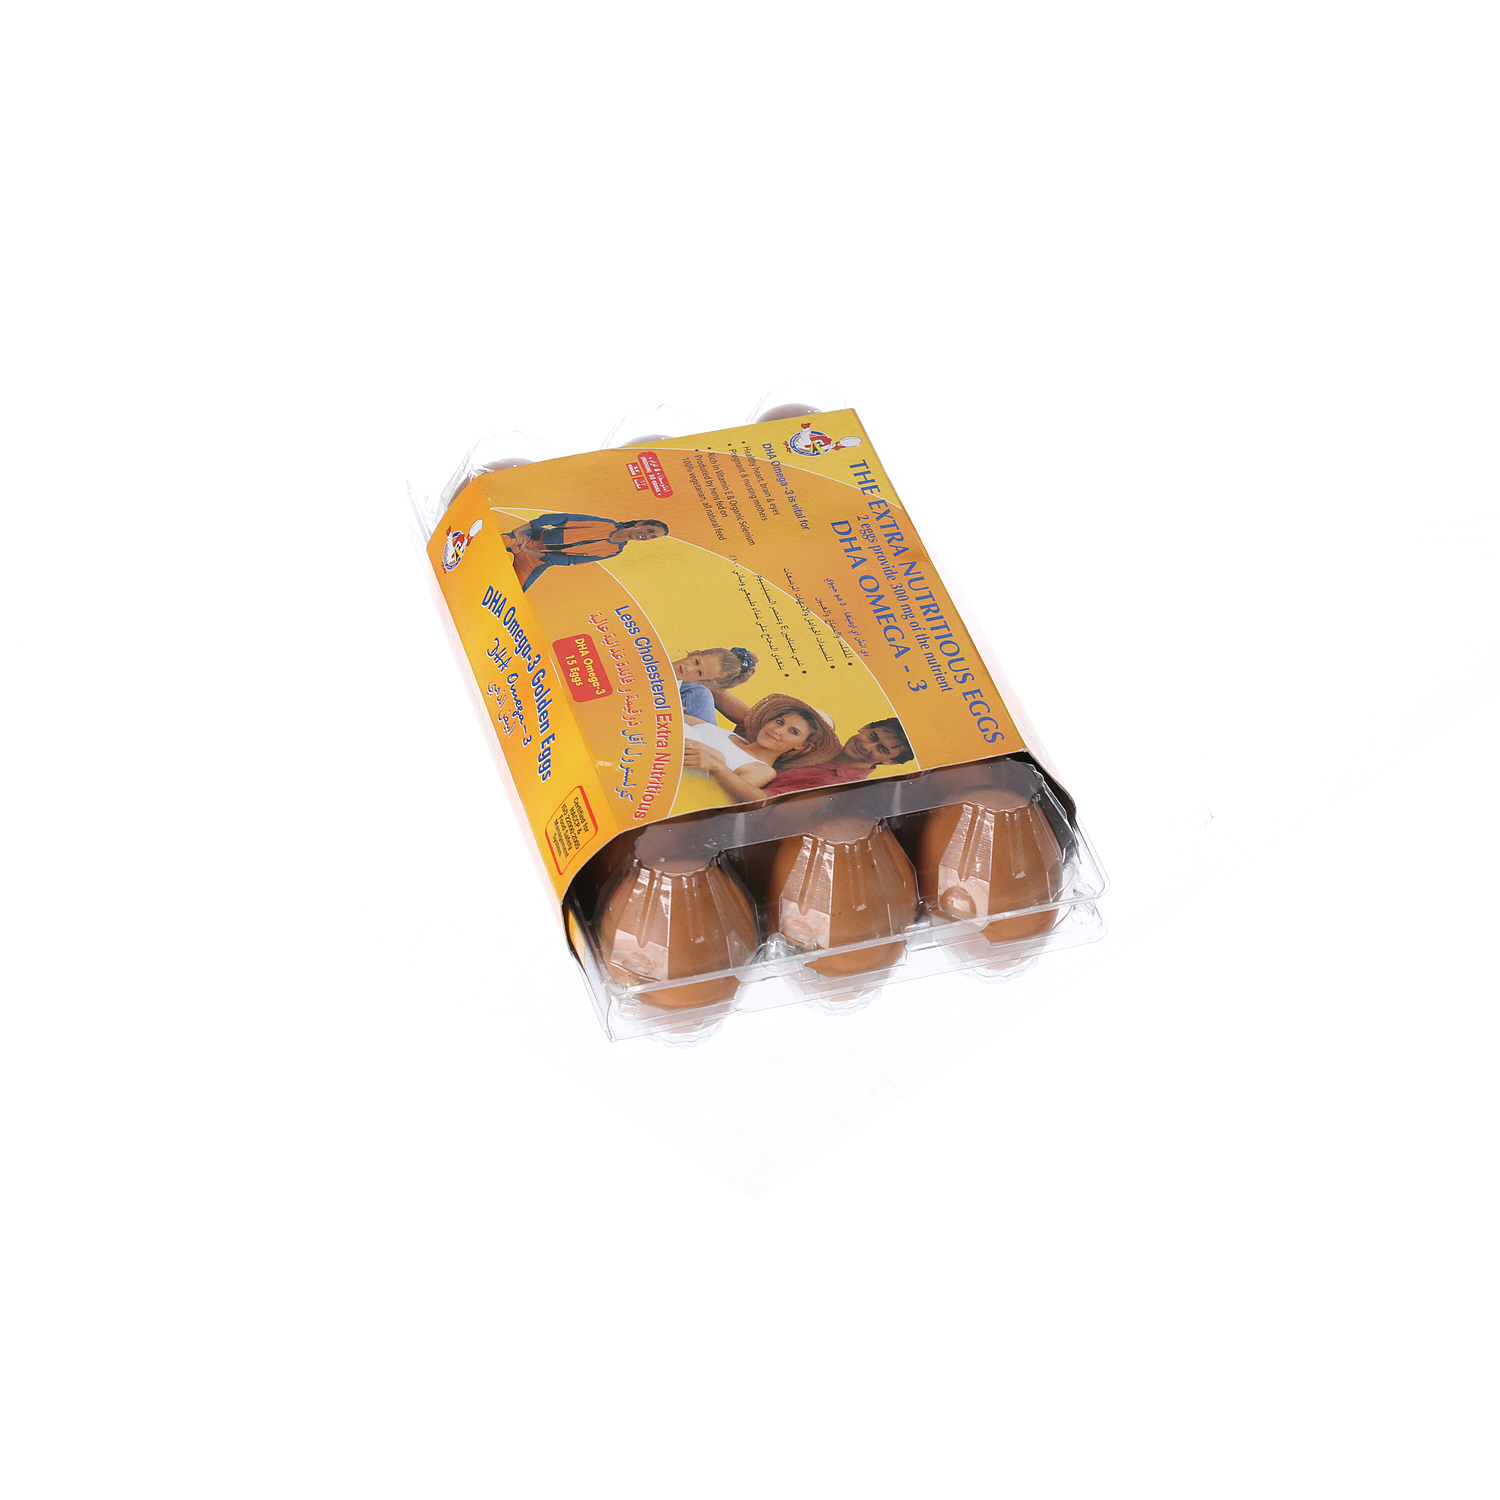 Al Jazira Eggs White and Brown Omega-3 Family Pack